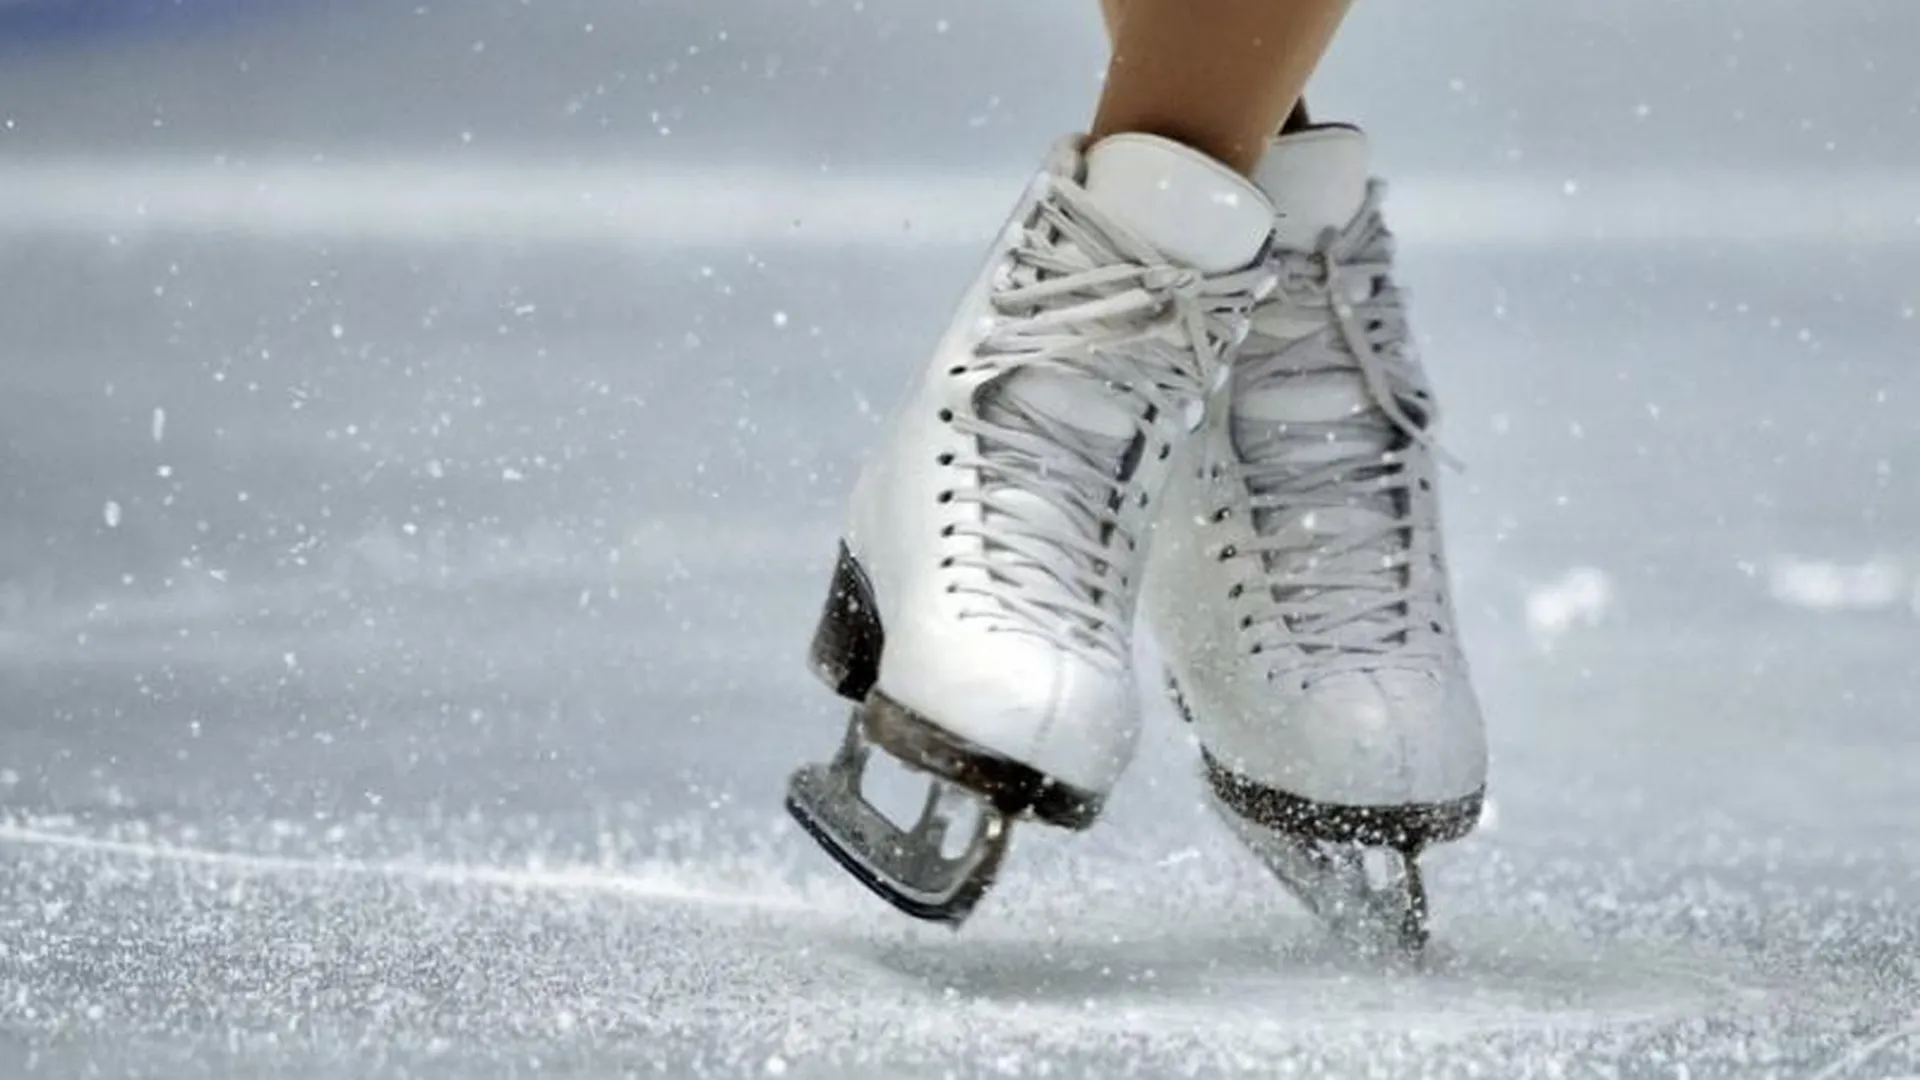 Шагающий лед. Коньки на льду. Коньки фигурные на льду. Фигурное катание на коньках.